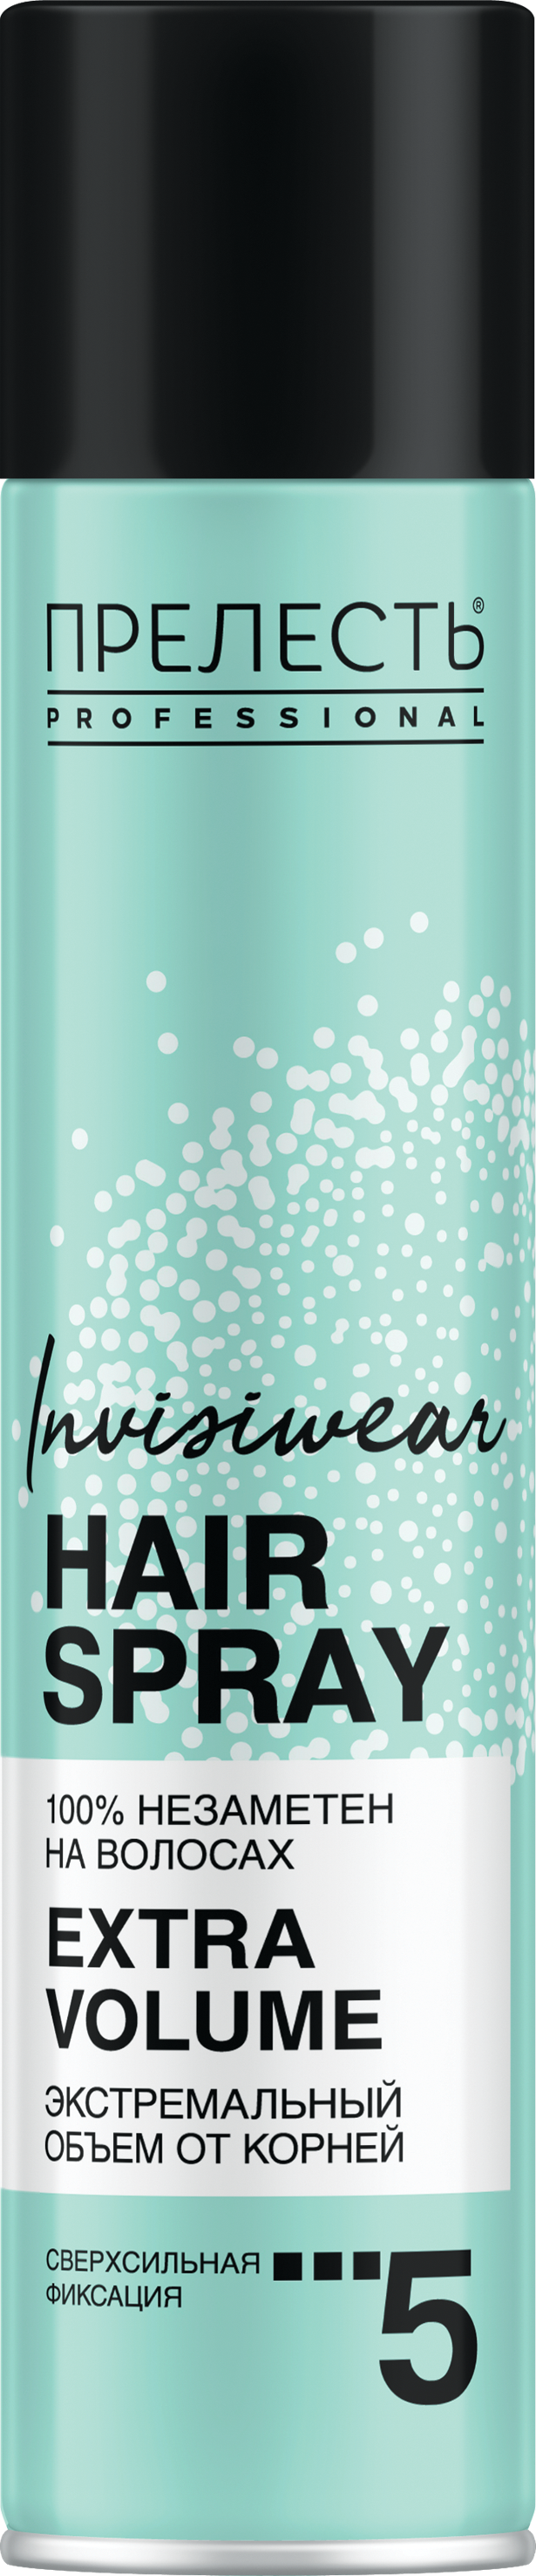 Лак для волос Прелесть Invisiwear Невесомый, экстремальный объем, 300 мл лак для волос прелесть pro максимальный объем длительная естественная фиксация 300 мл